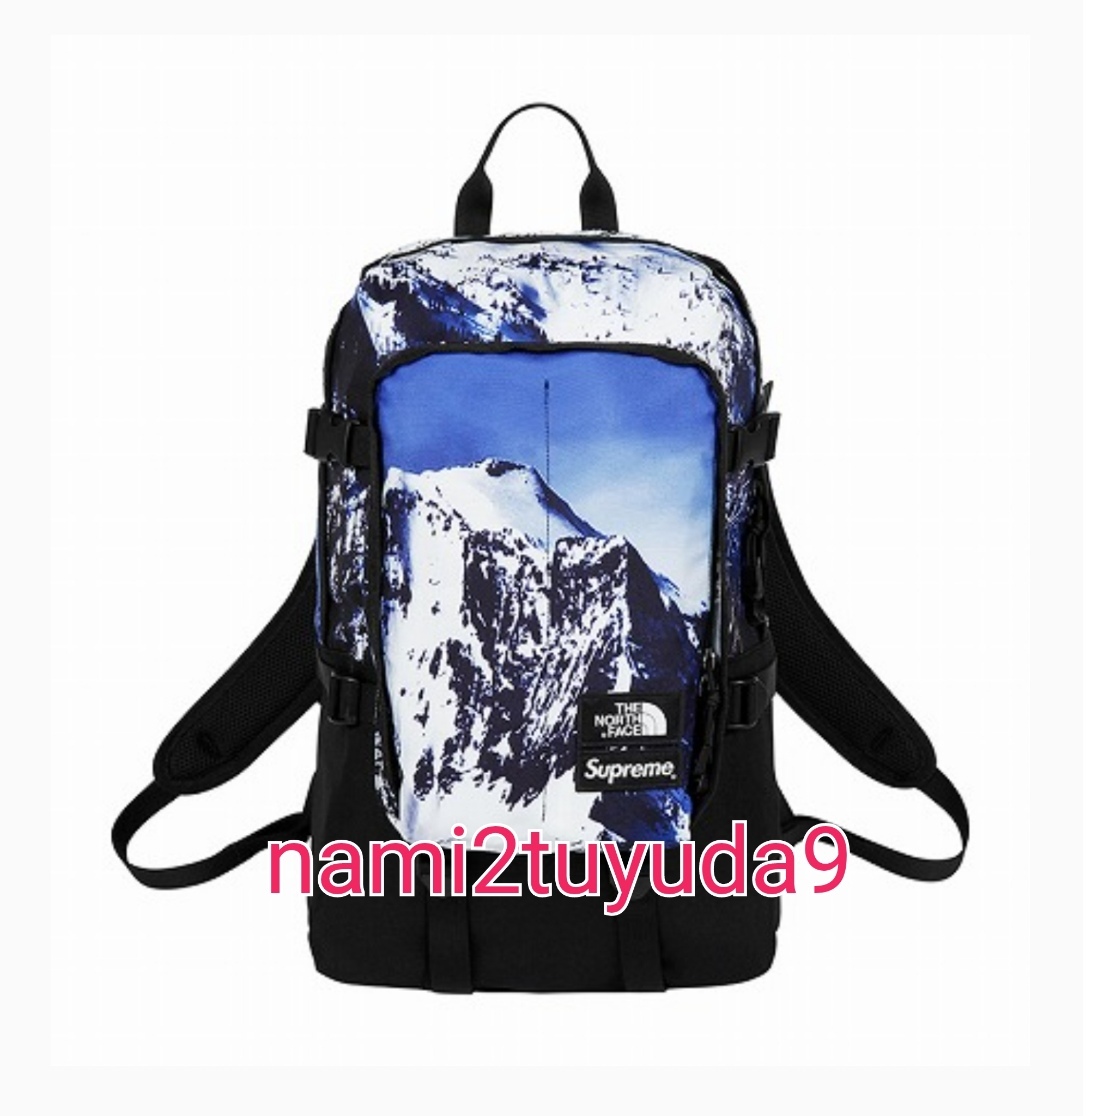 【新品・未使用】 激レア Supreme The North Face Mountain Expedition Backpack バックパック 17AW 雪山 ノースフェイス